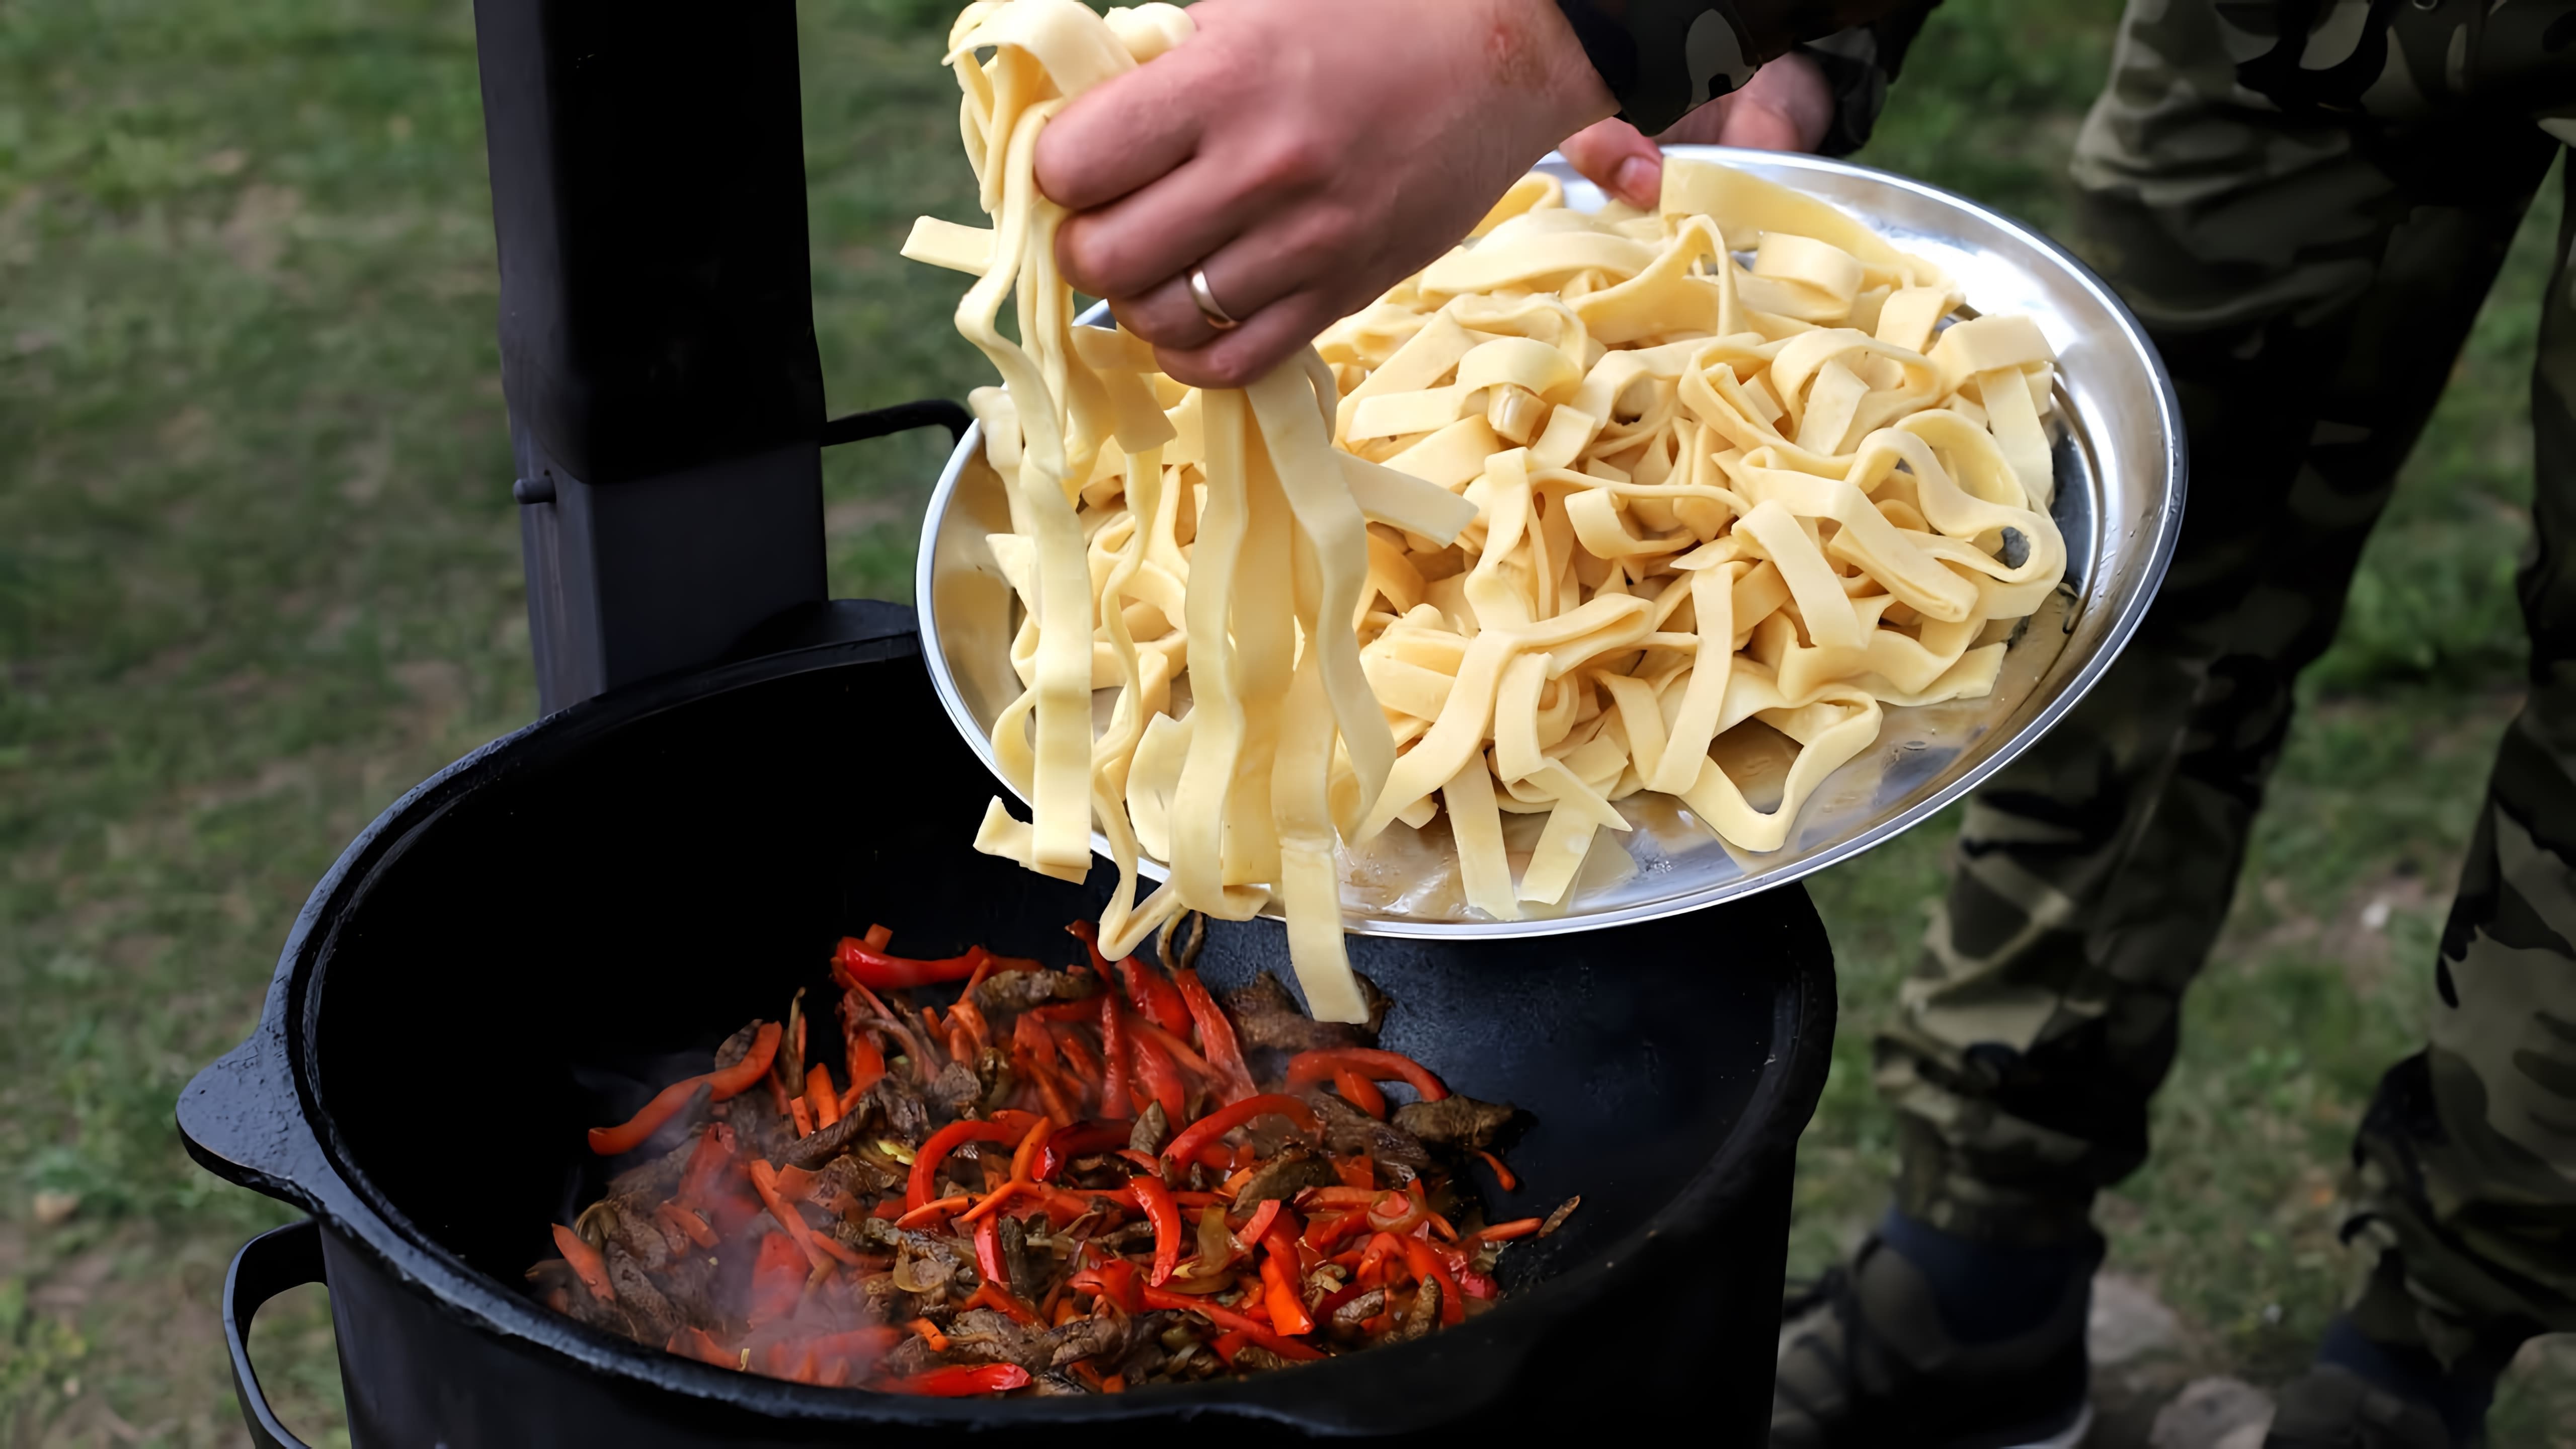 В этом видео демонстрируется рецепт приготовления монгольской домашней лапши с мясом и овощами